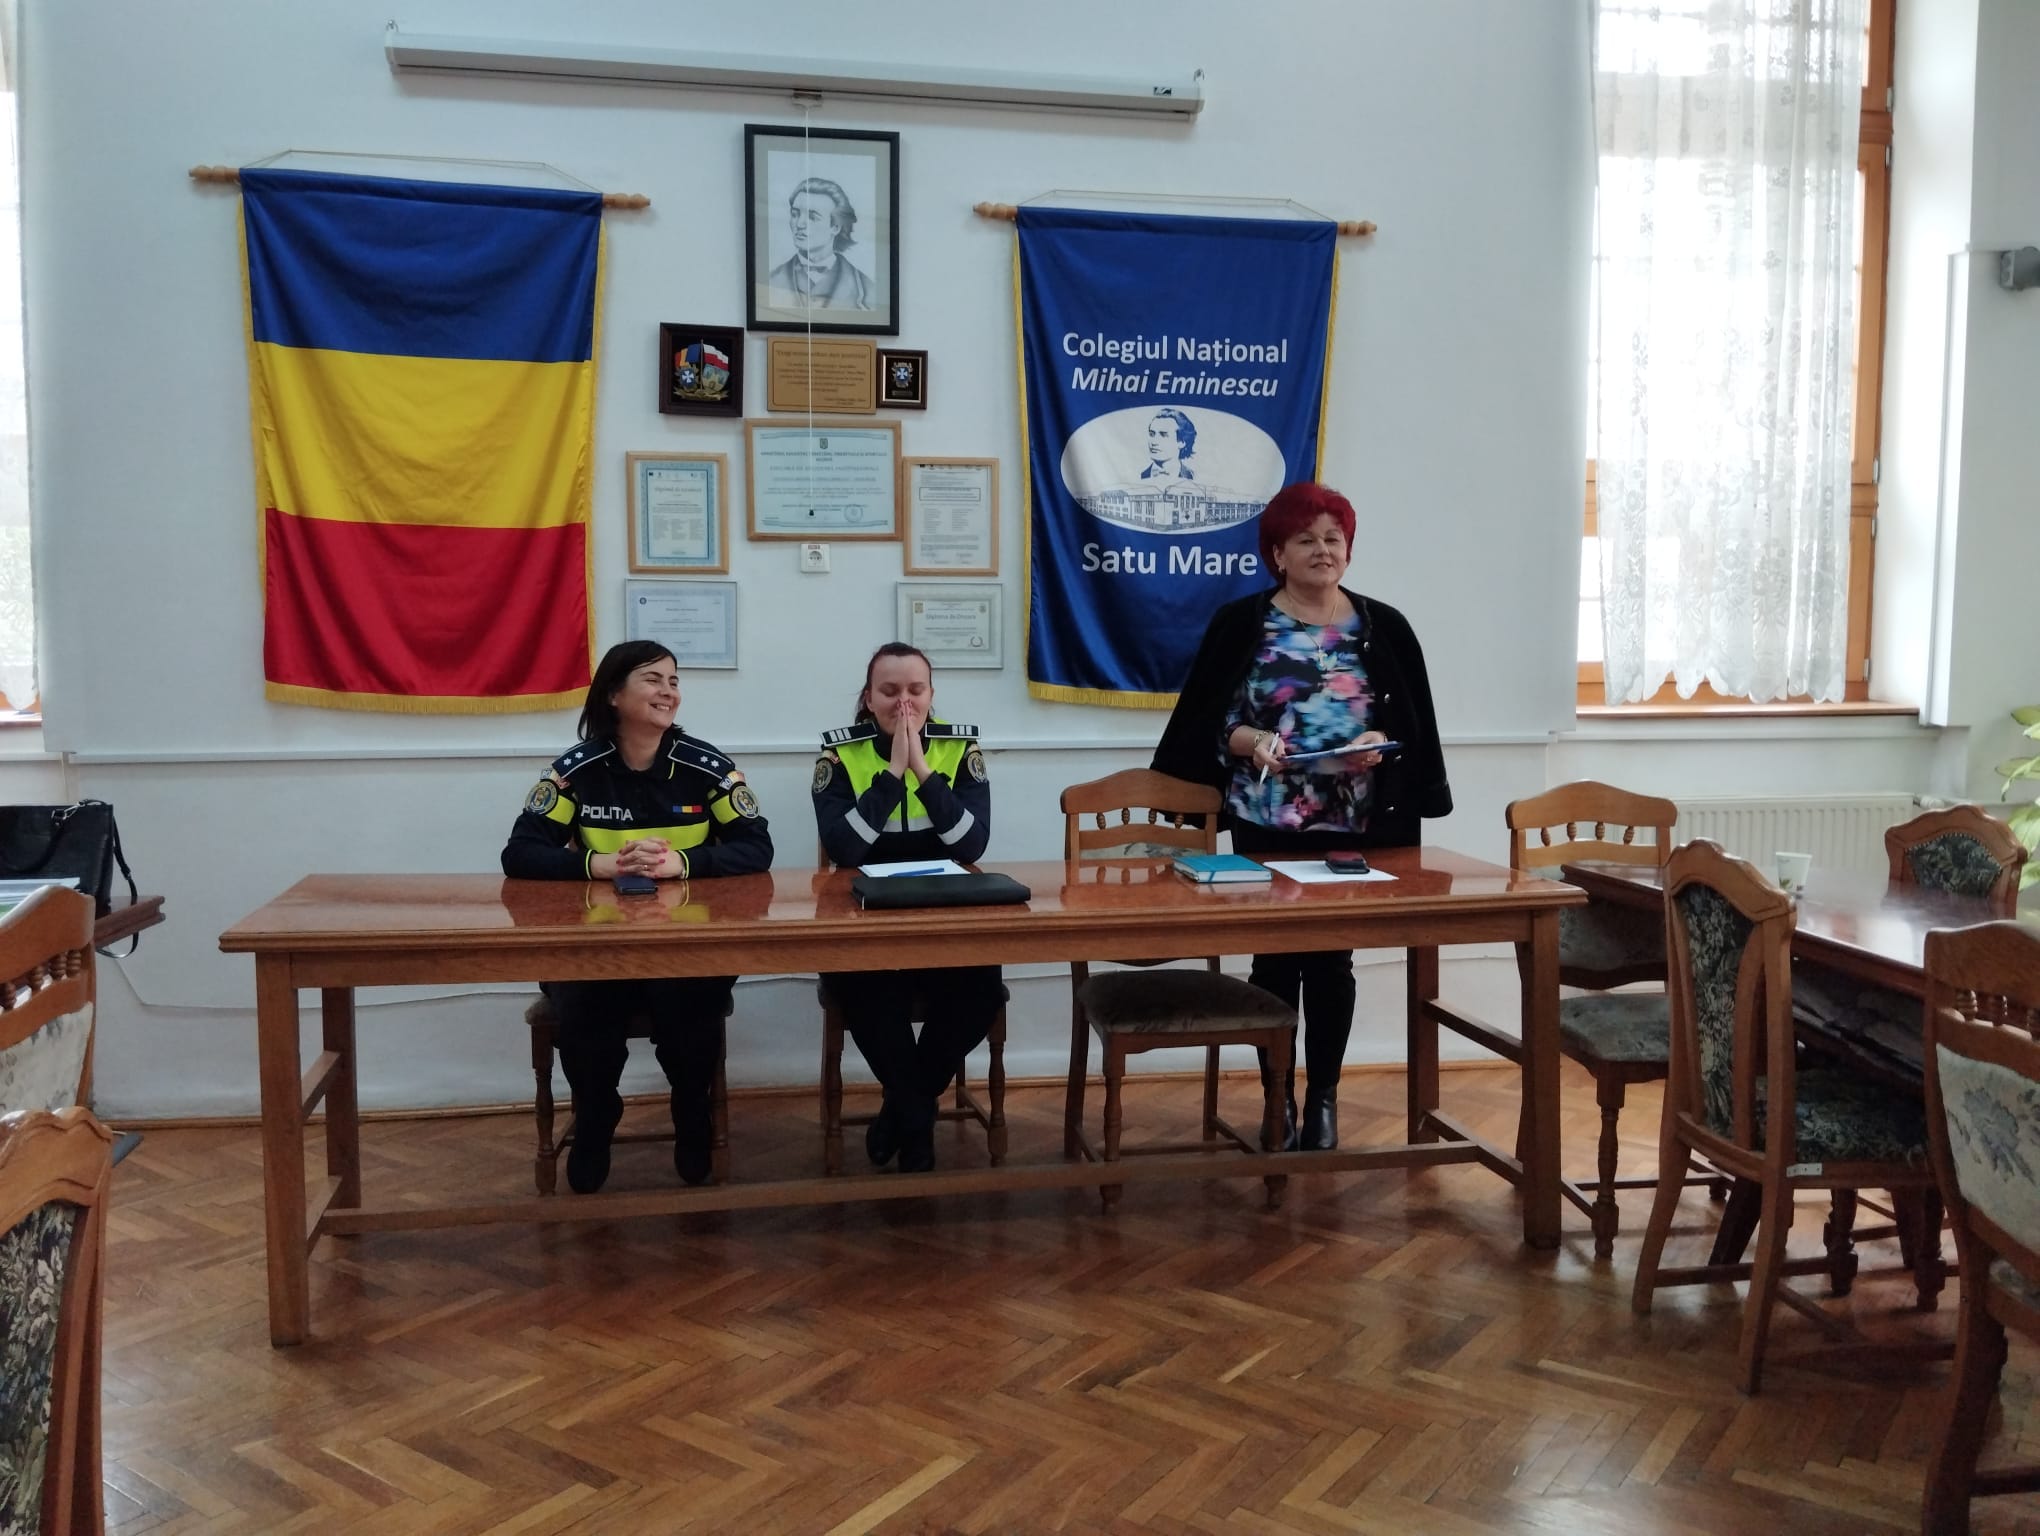 Promovarea siguranței în mediul școlar: O inițiativă comună la Colegiul Național ‘Mihai Eminescu’ Satu Mare